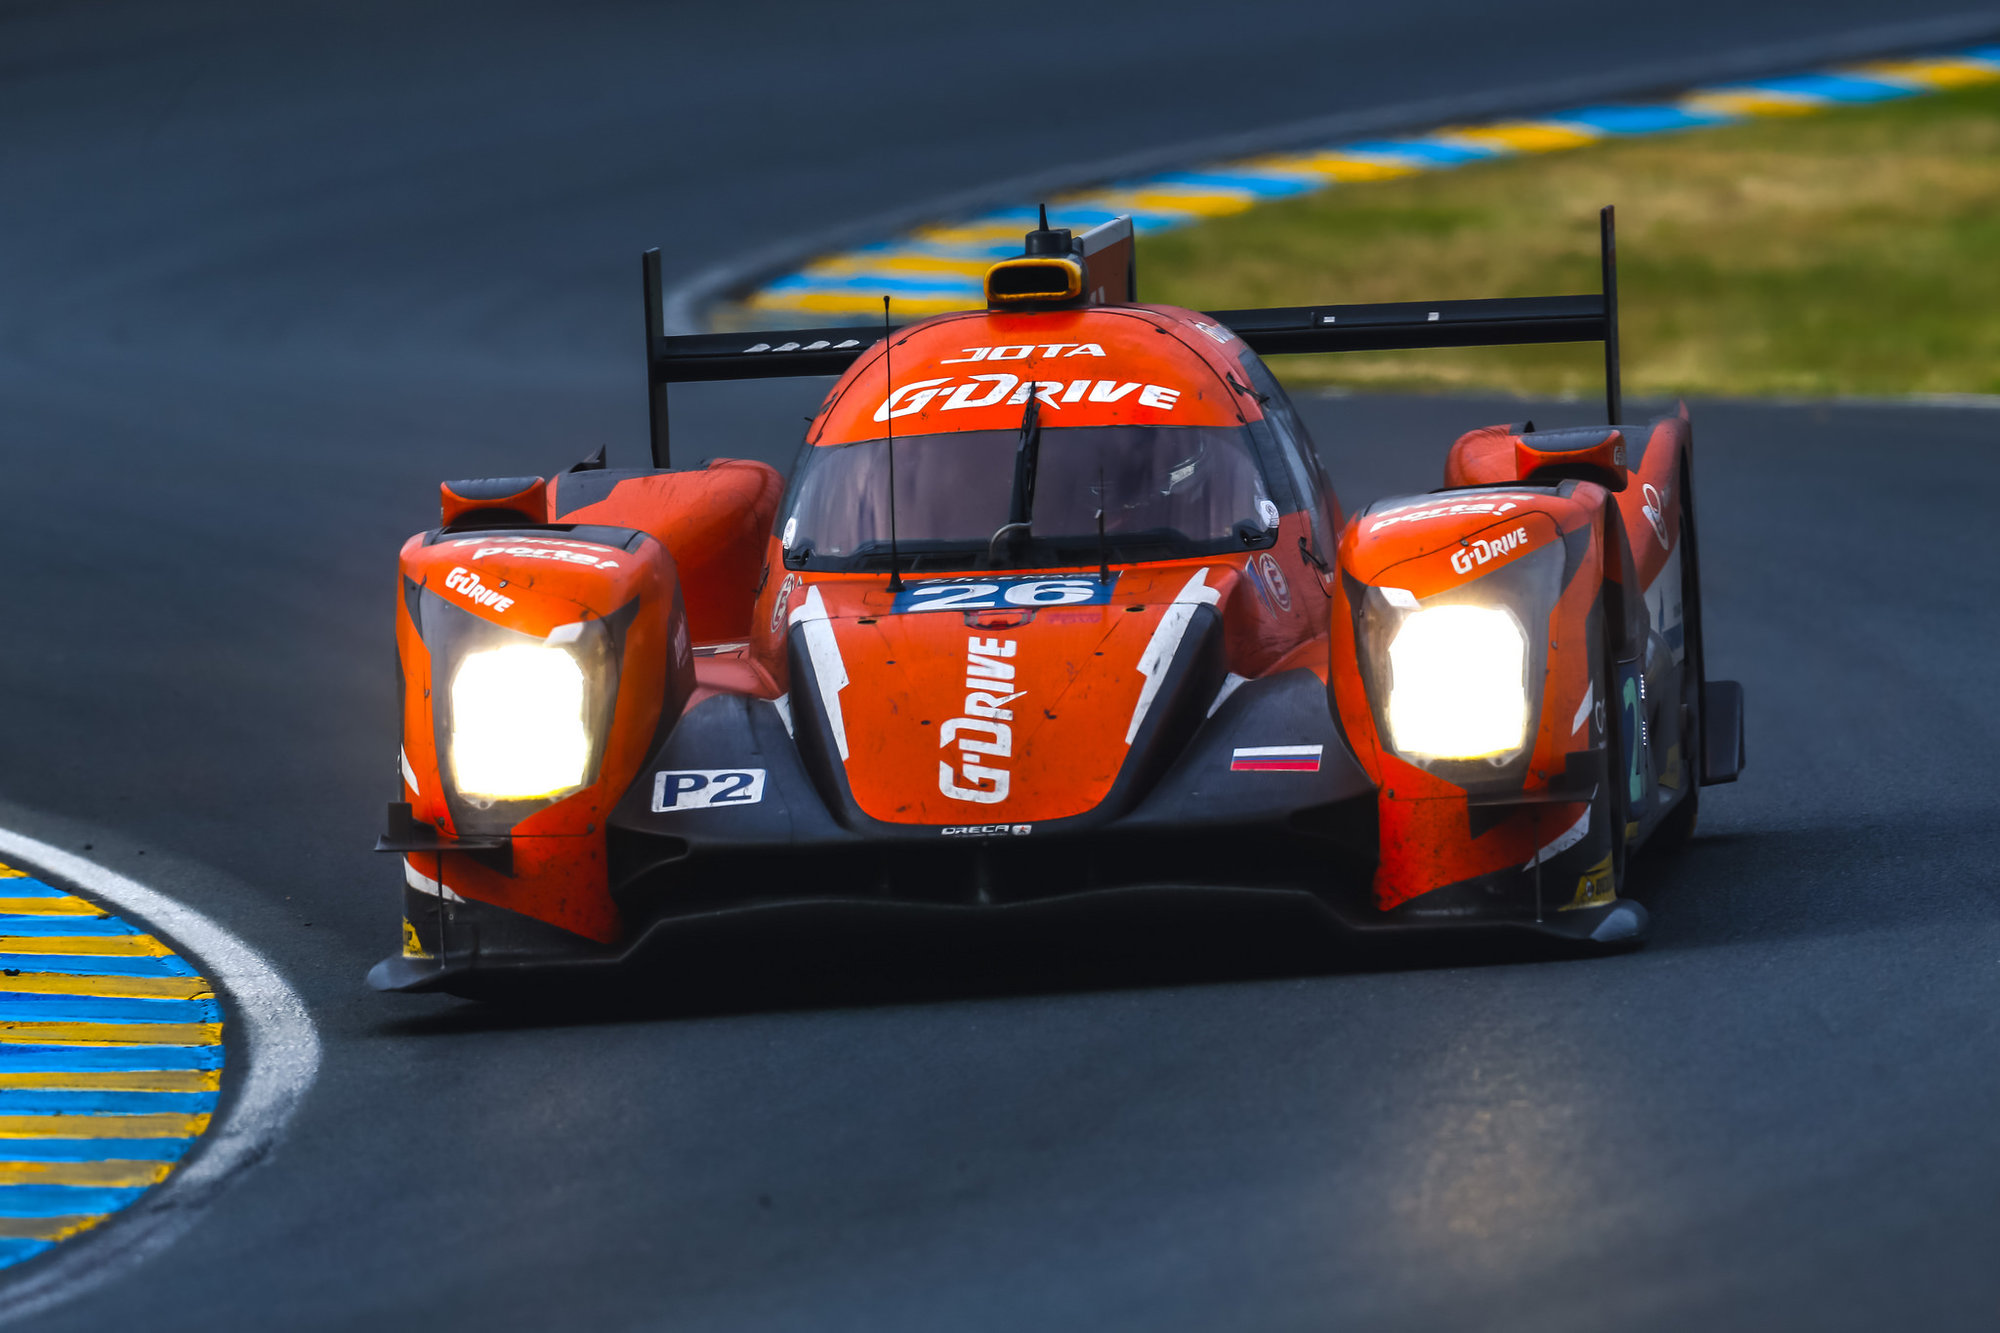 Tým G-DRIVE Racing nasadil v závodě 24 h Le Mans prototyp Oreca 05 Nissan ve tříde LMP2 s posádkou Rast / Rusinov / Stevens